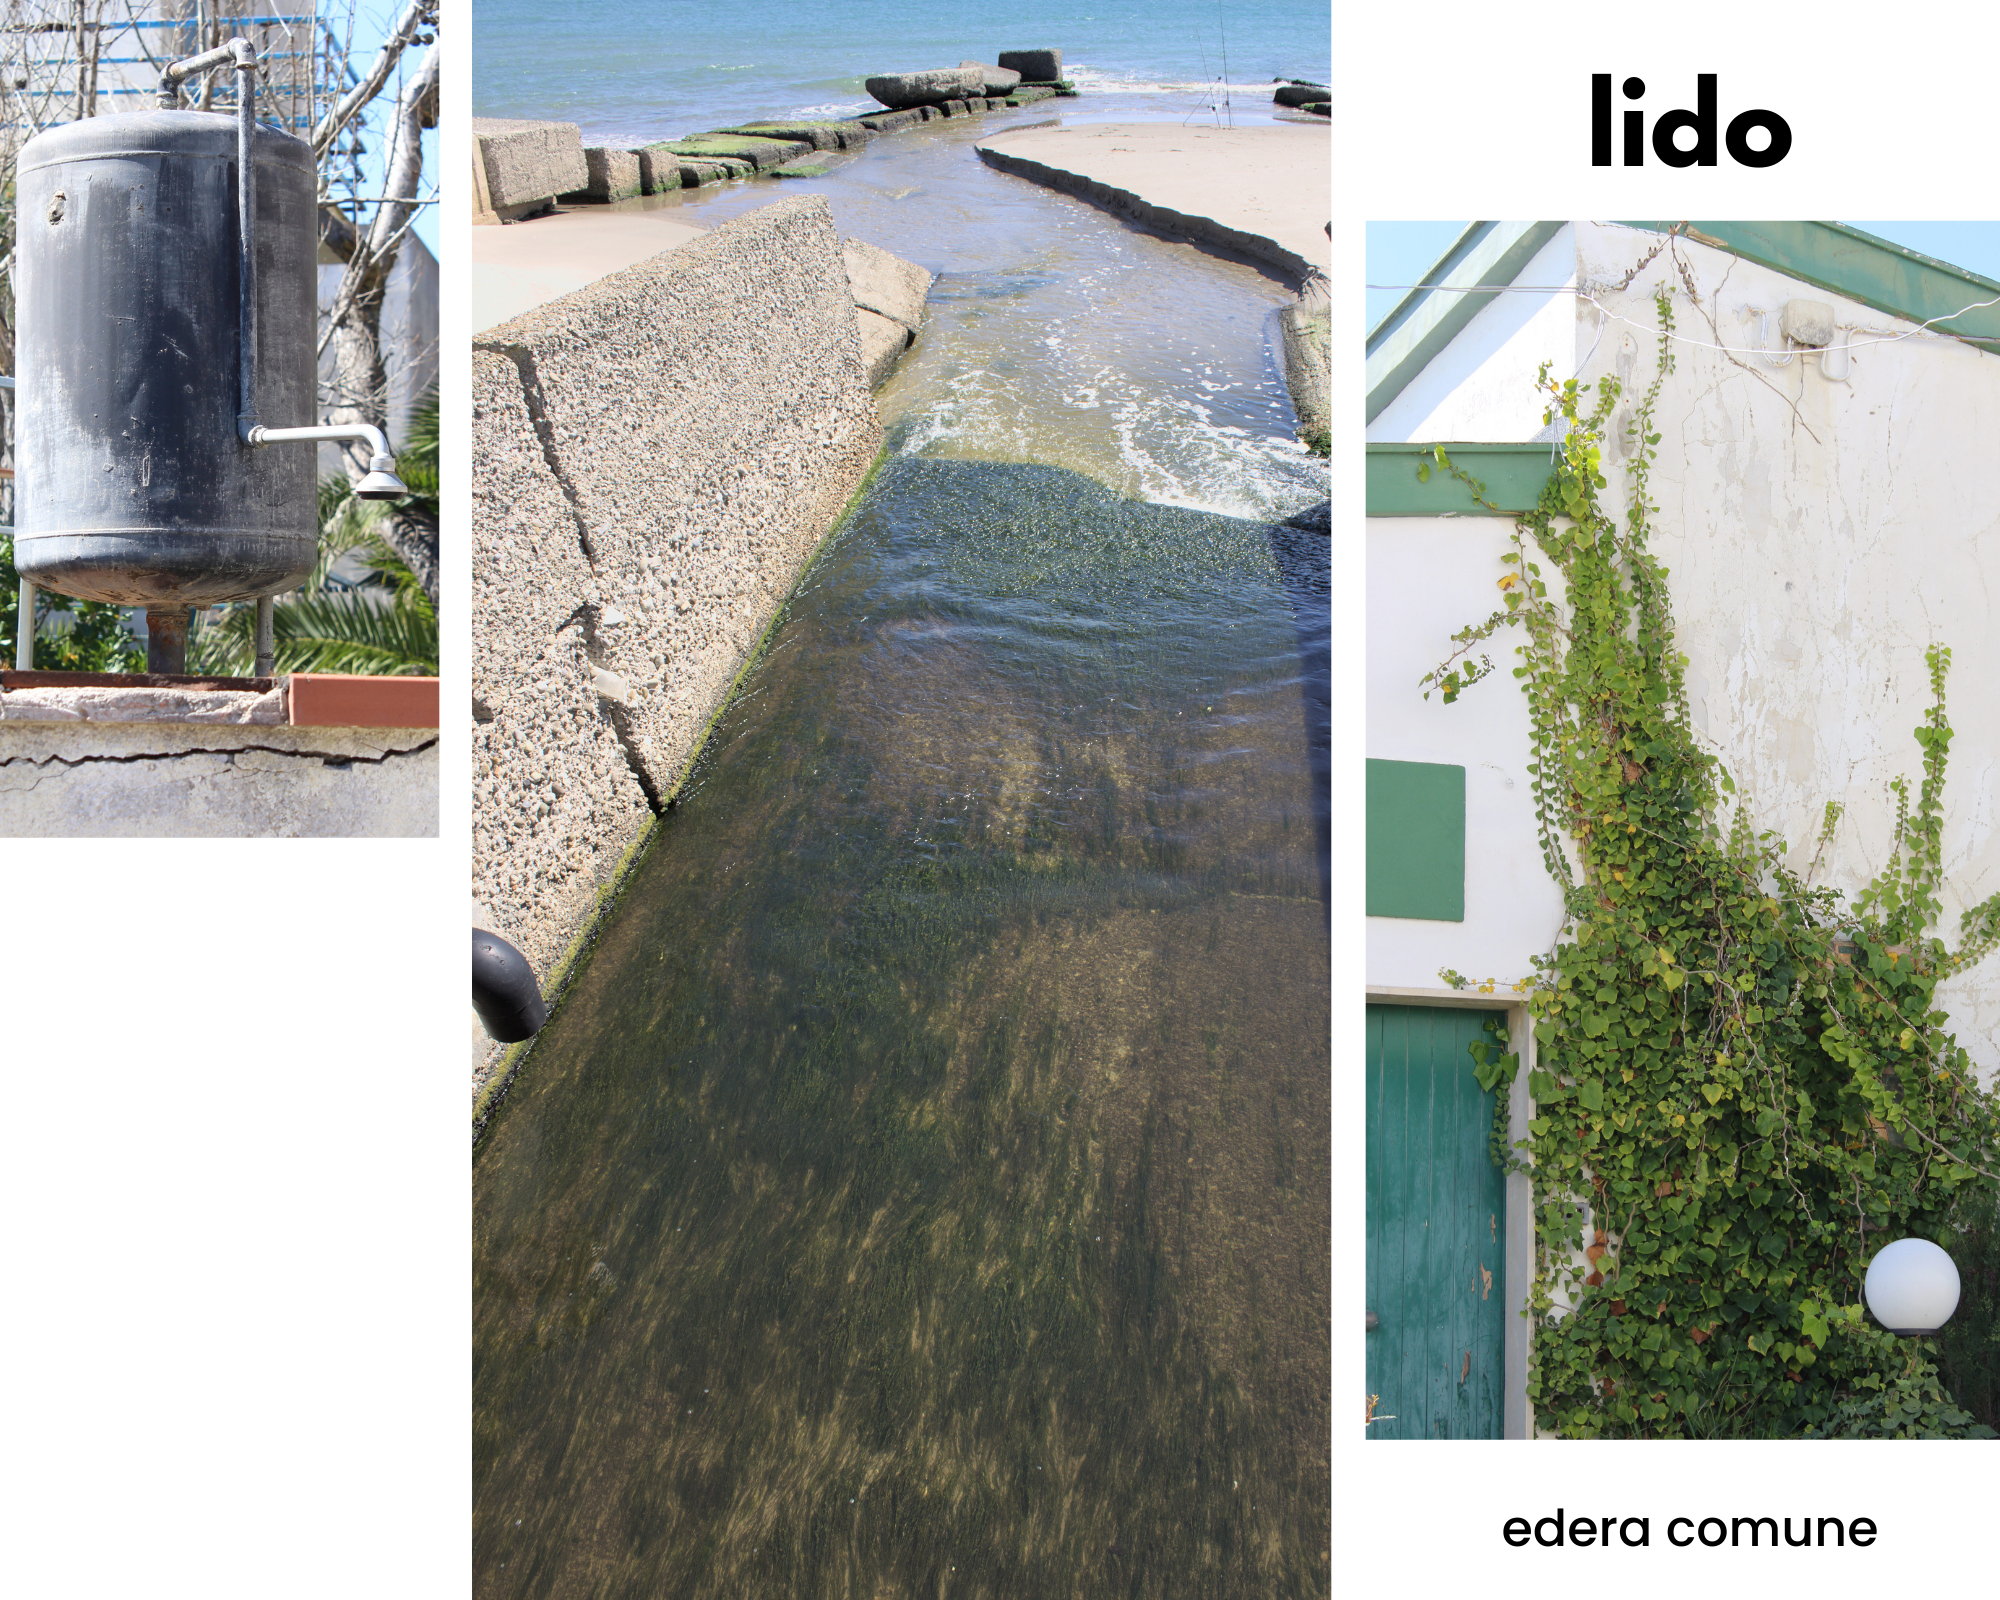 Lido: boiler con doccetta in cortile esterno; canale che sfocia nel mare; edera comune abbarbicata sul muro di una villetta bianca e verde